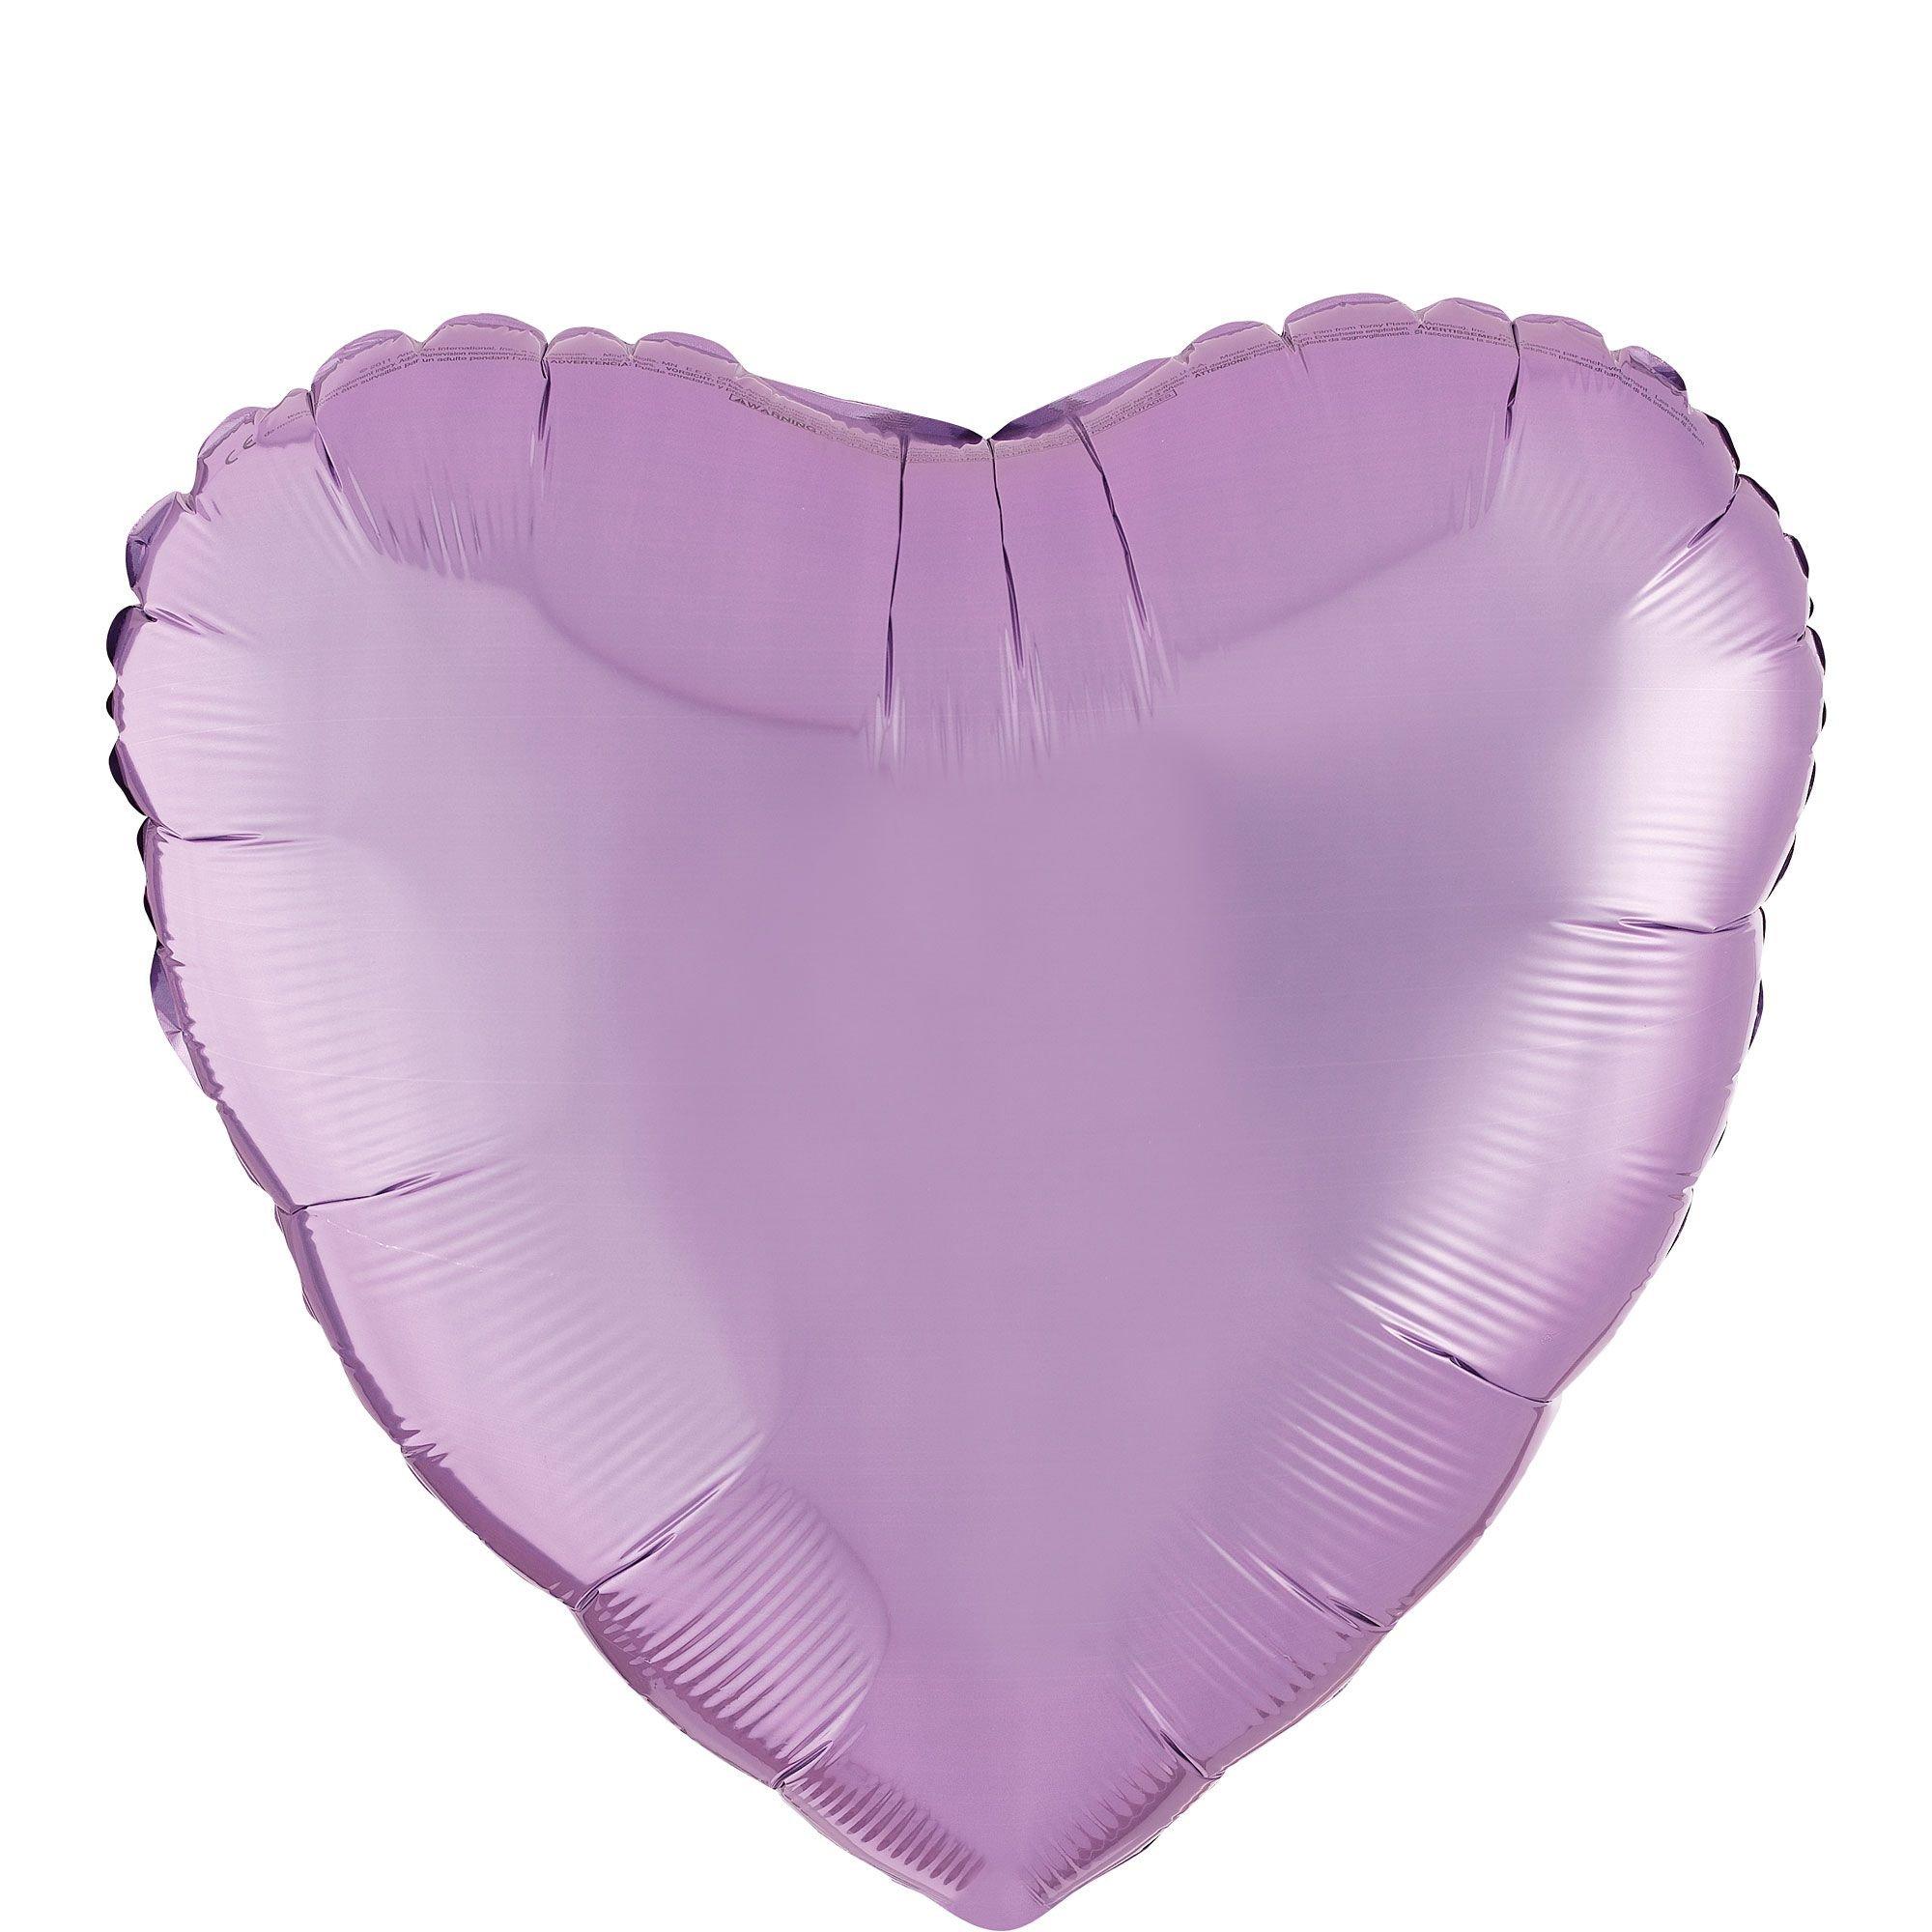 17in Lavender Heart Foil Balloon